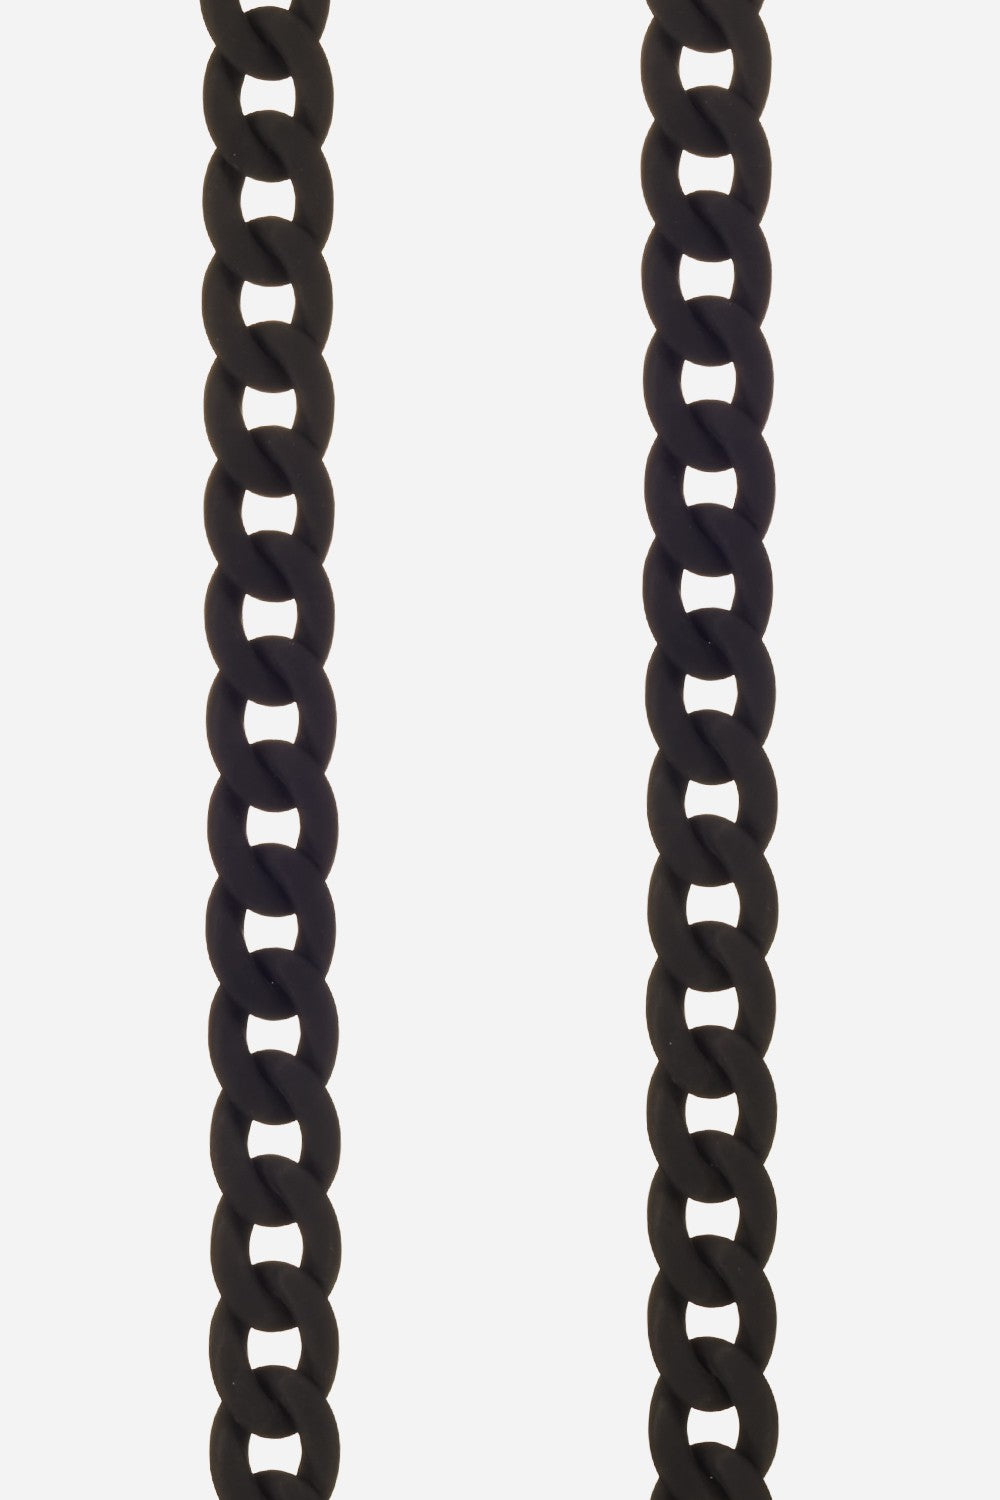 Chaine Longue Sarah Noir 120 cm